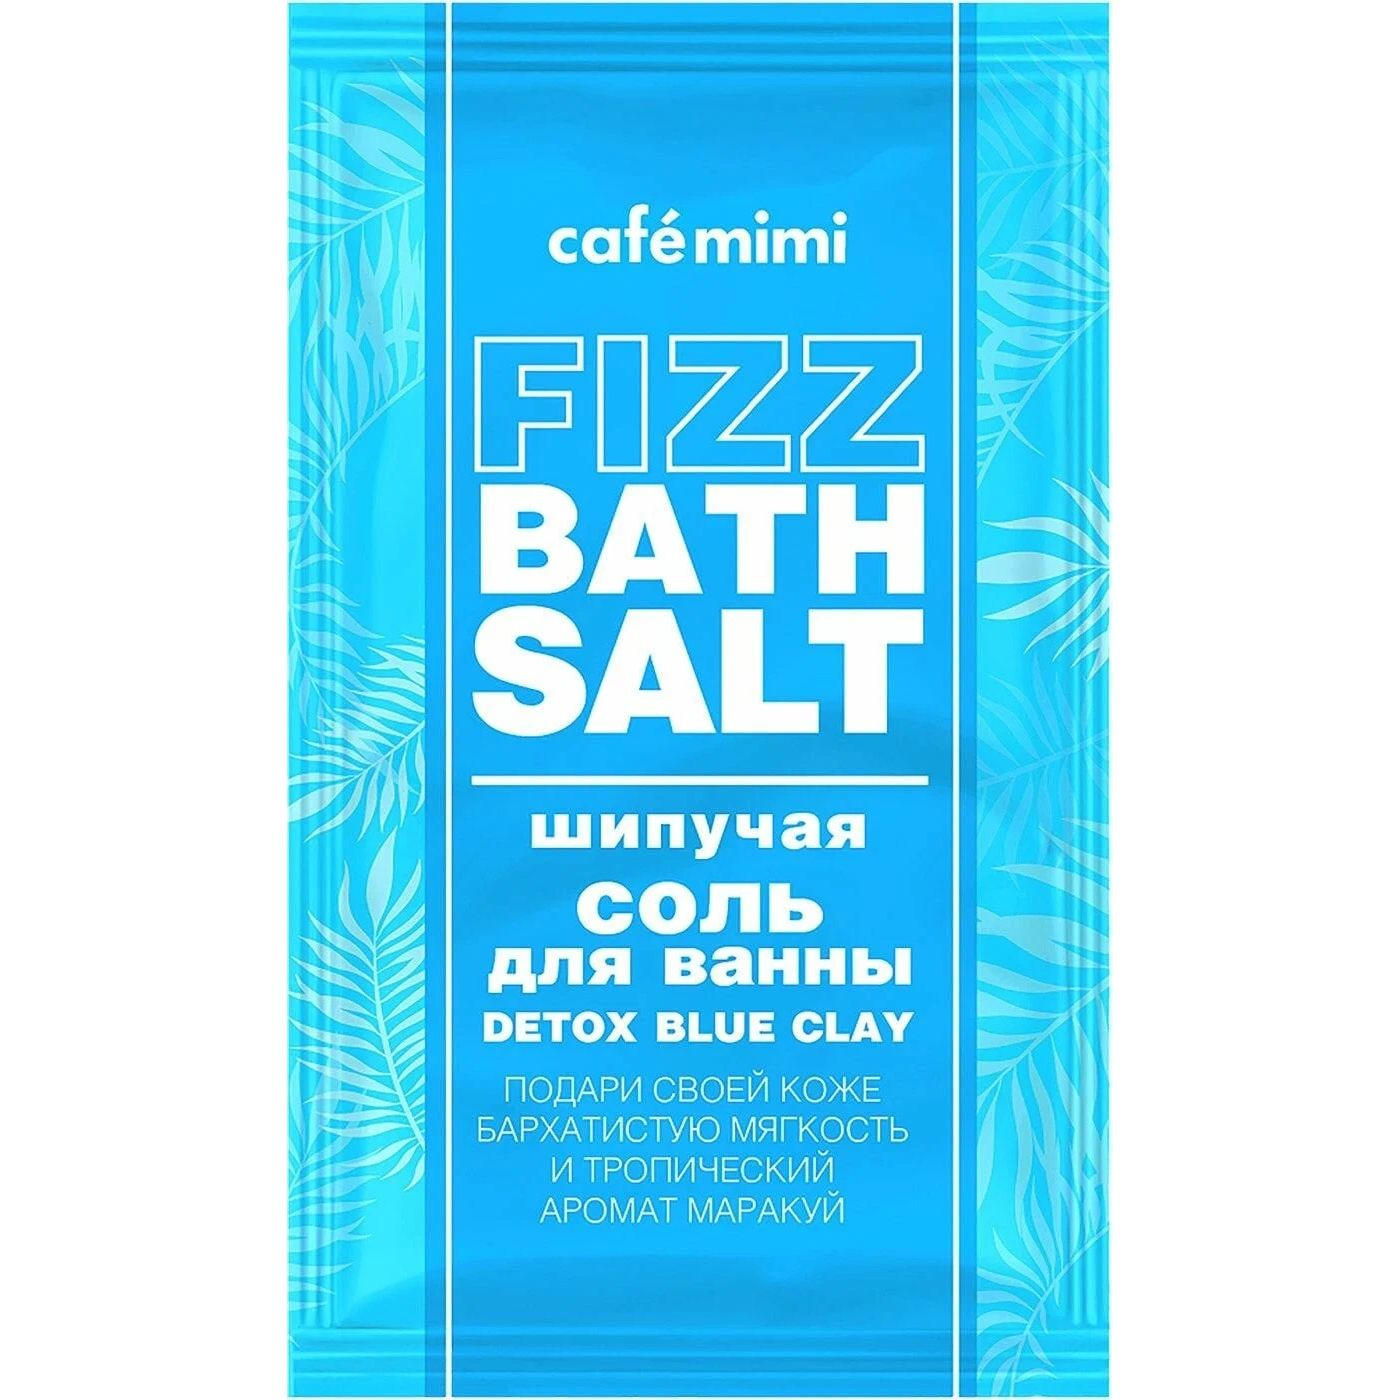 Соль для ванн Cafemimi Fizz Bath Salt Detox Blue Clay шипучая, 100 г соль для ванн mon platin bath salt 500 г